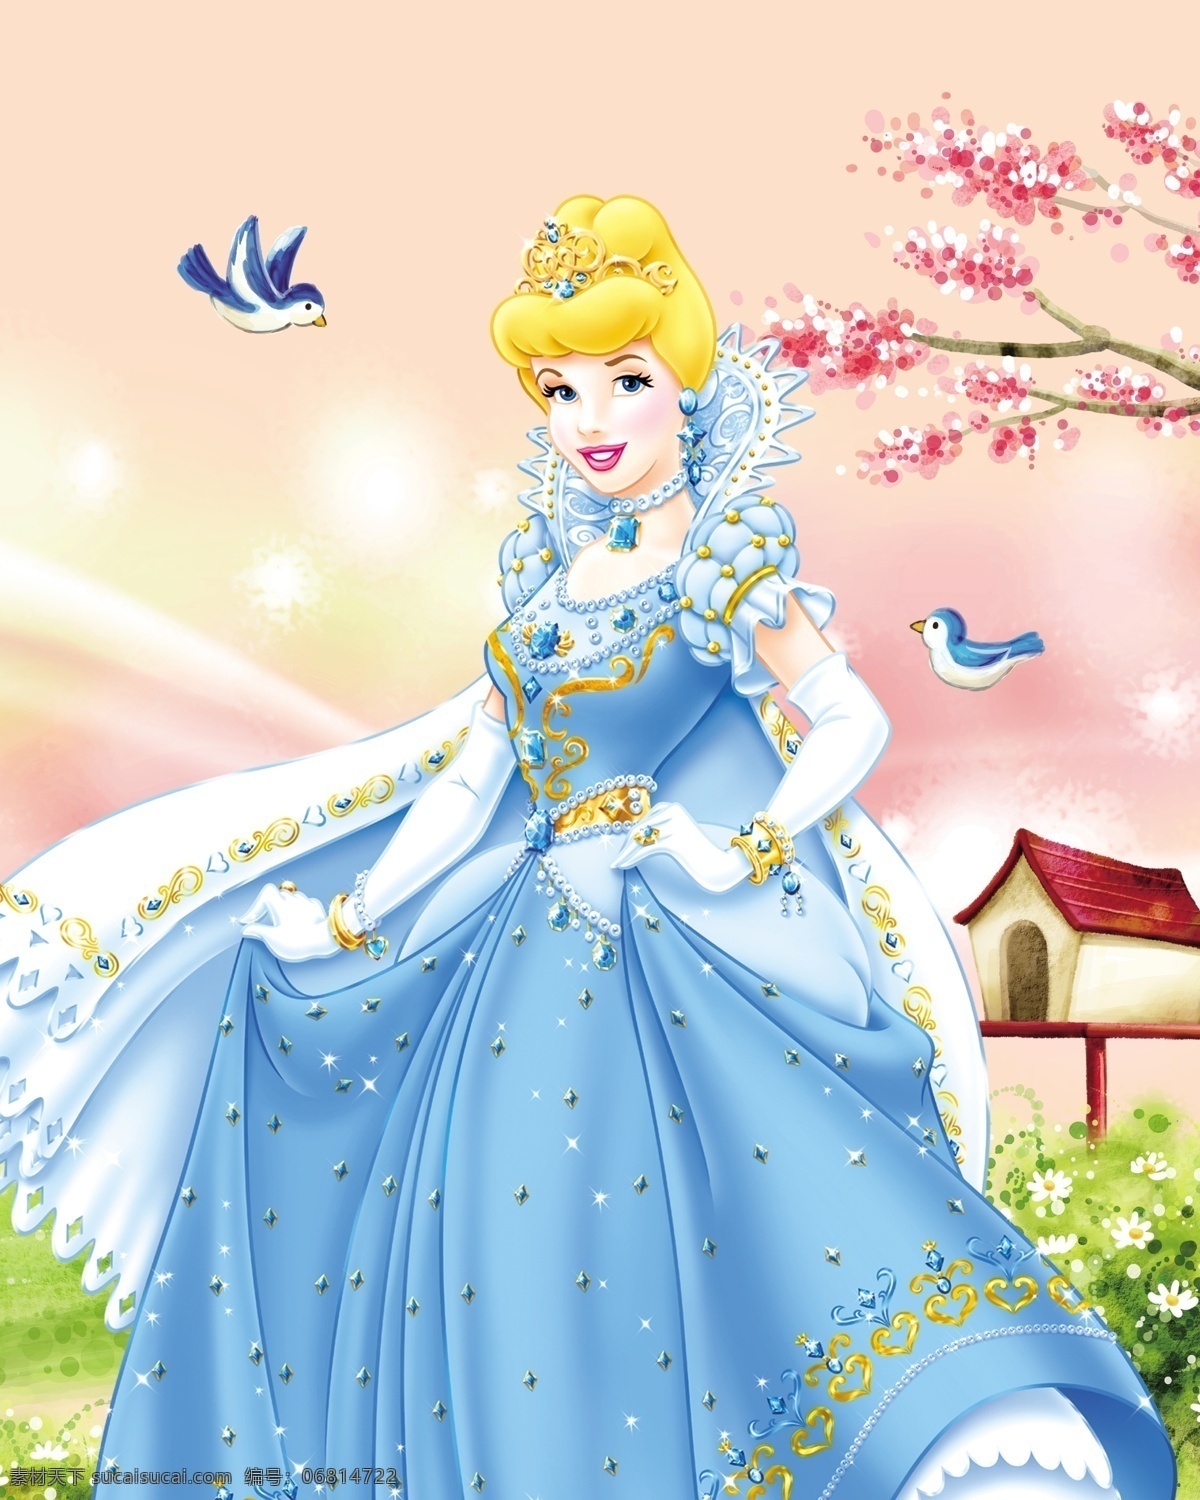 迪斯尼公主 公主 卡通人物 漂亮公主 温馨背景 文化艺术